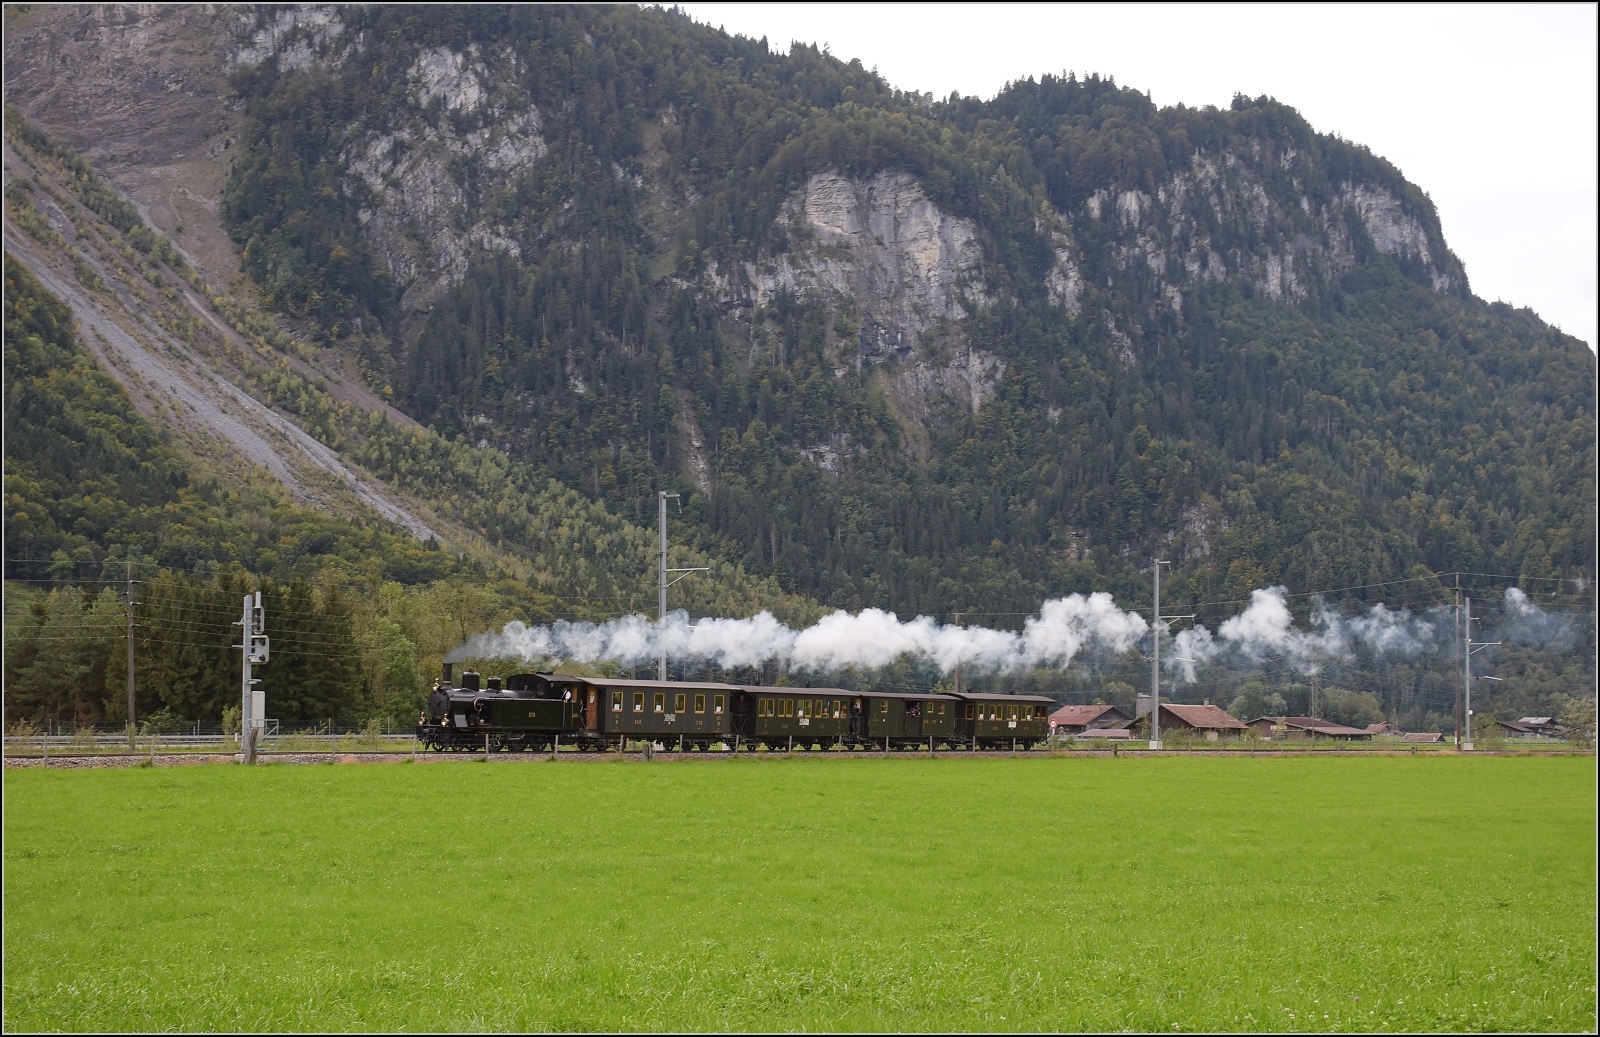 Ballenberg Dampfbahn nach Innertkirchen.

G 3/4 208 entlang der Aare durch das Haslital mit dem Ballenberg im Nacken des Fotografen. Oktober 2019. 